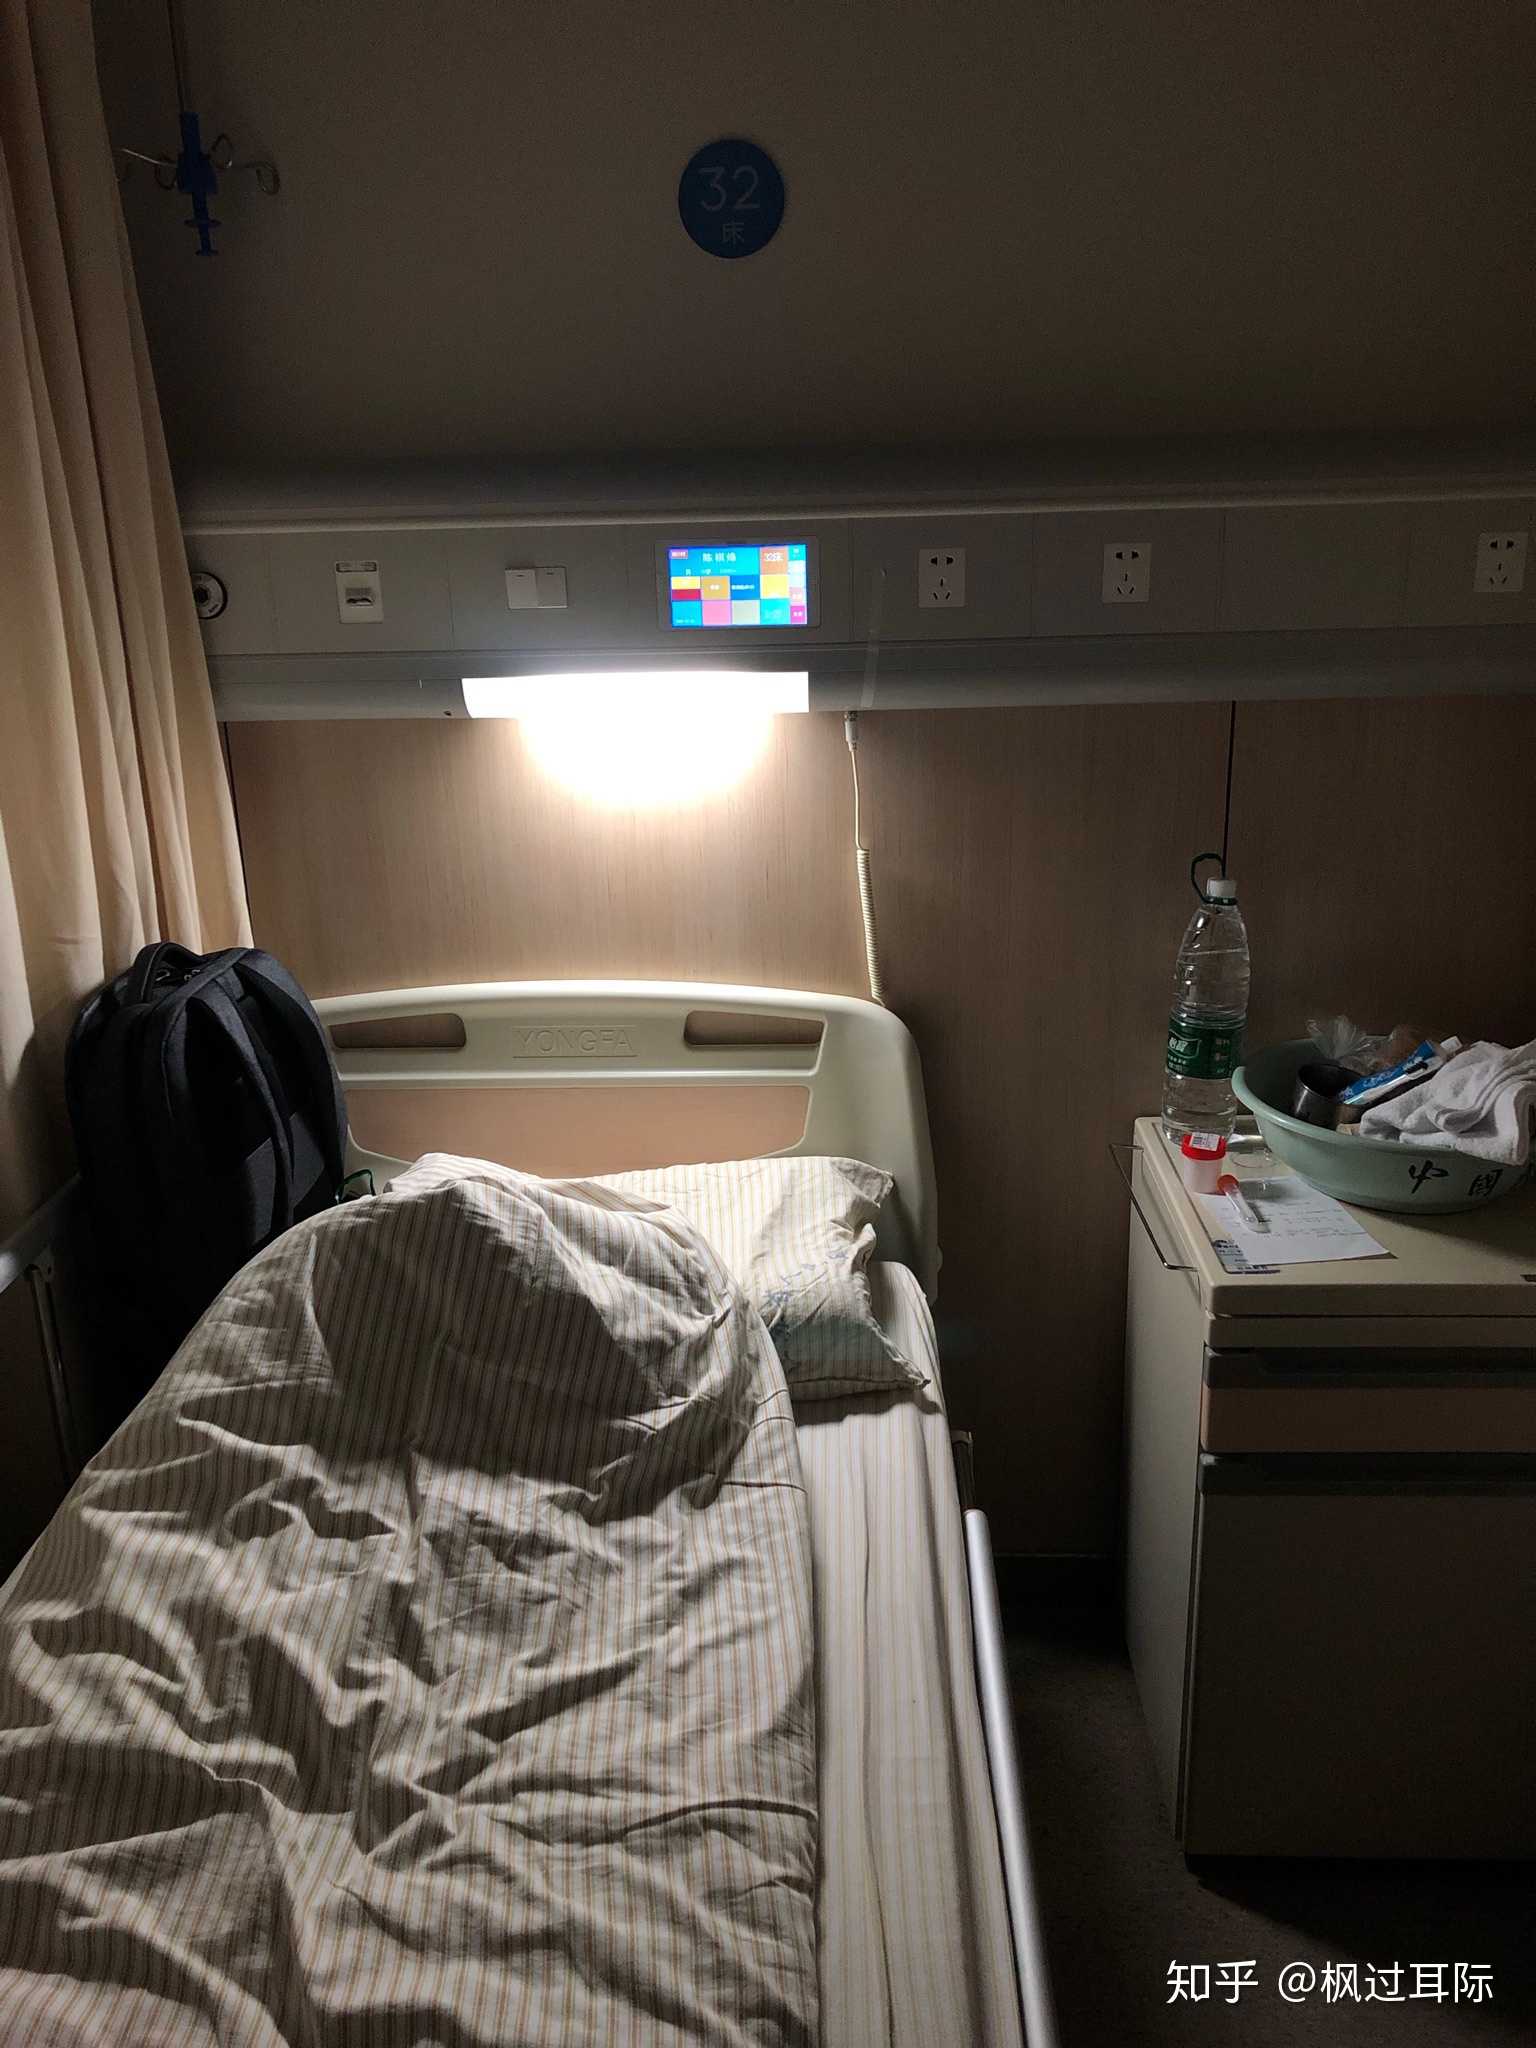 住院病房真实图片晚上图片